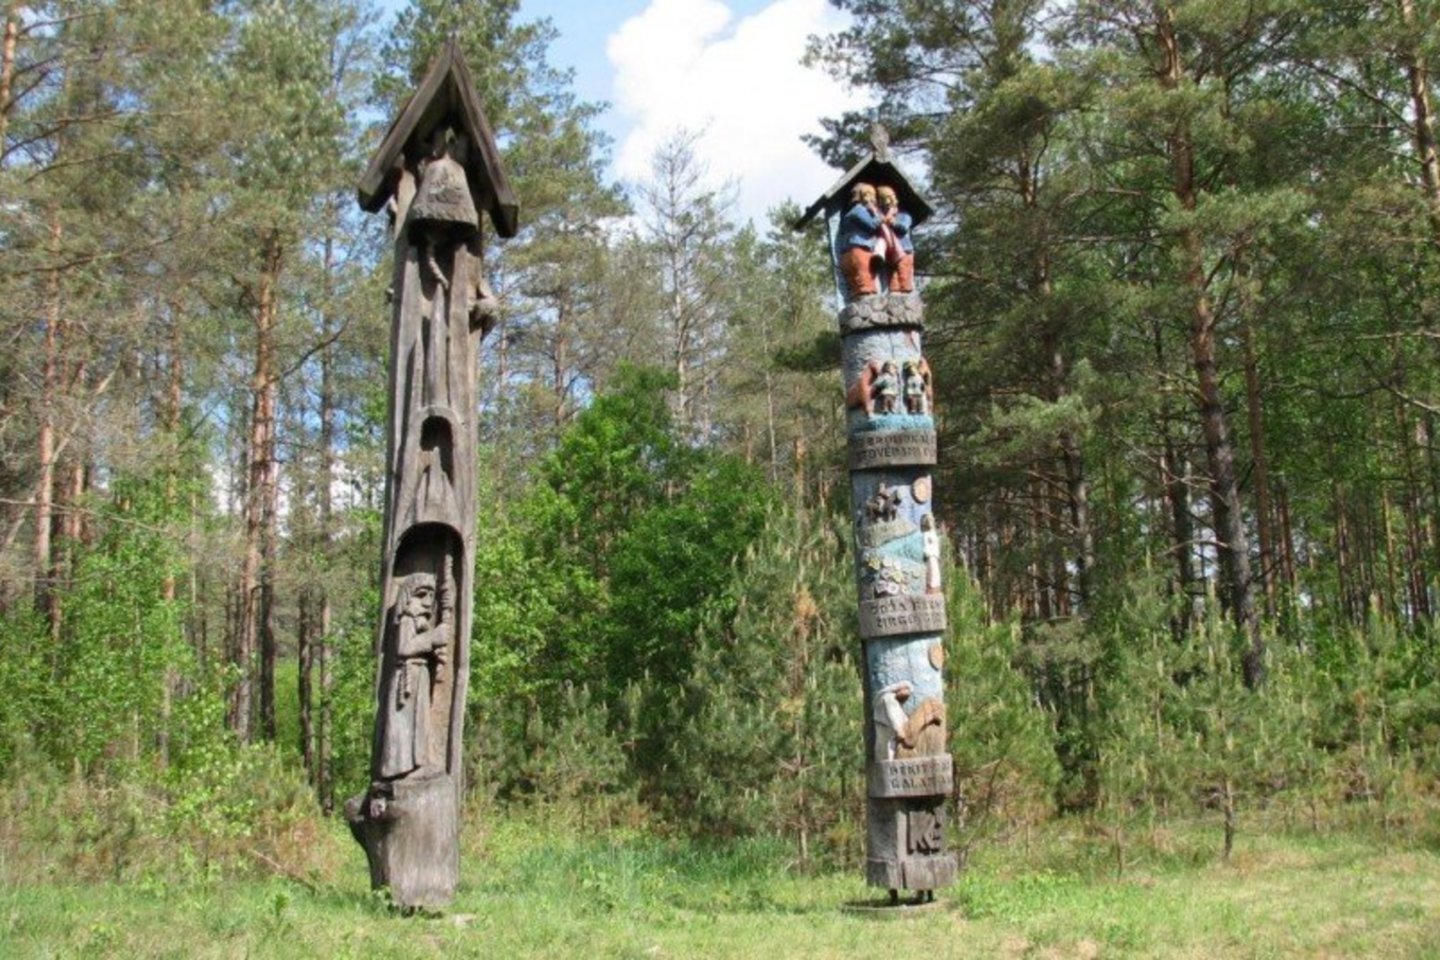  Skulptūras tautodailininkai iš medžio išskobė 1975–1976 metais, minint M.K.Čiurlionio gimimo šimtmetį.<br> Varėnos savivaldybės archyvo nuotr.